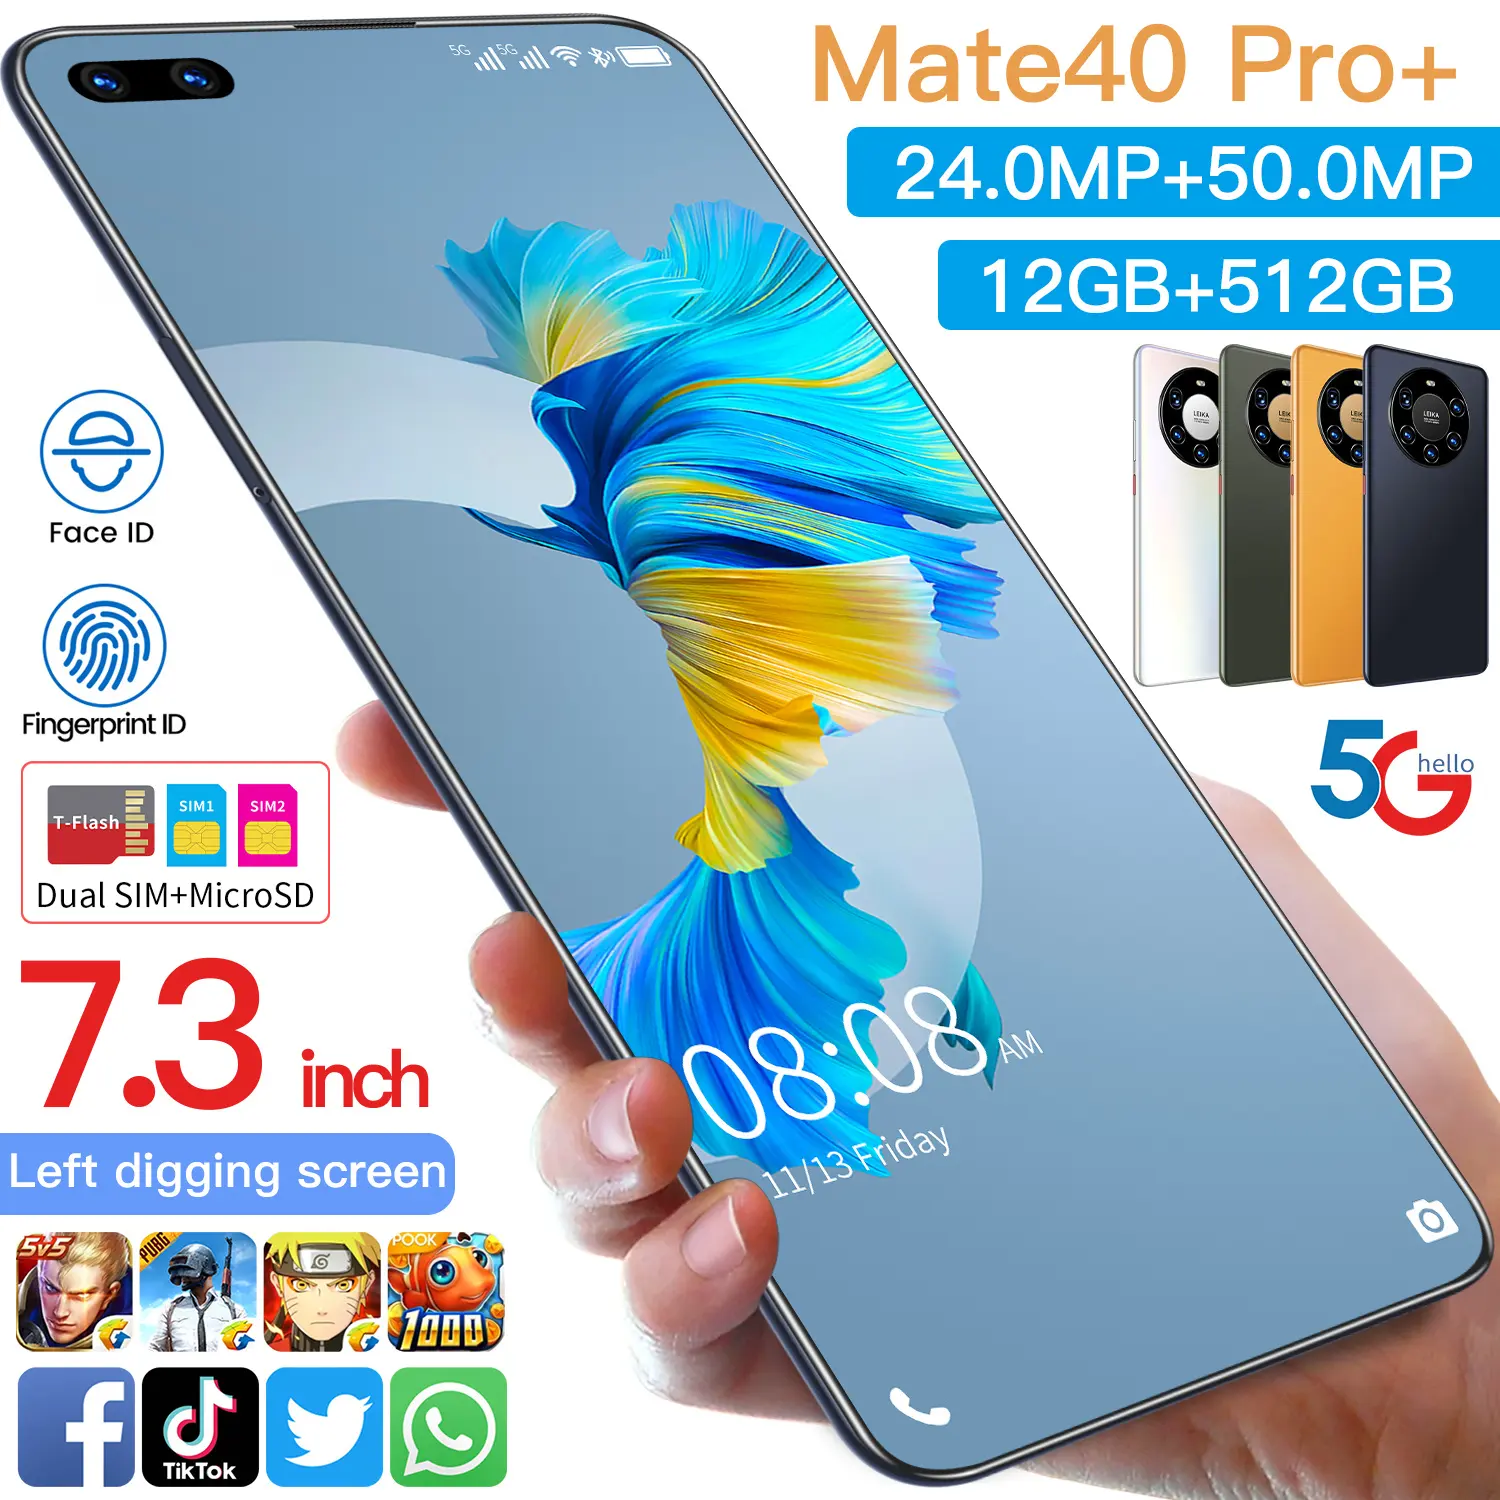 Vendita calda Mate 40 Pro + originale 12gb + 512gb 24mp + 50mp Face Unlock Display completo Android 10.0 cellulare Smart Phone